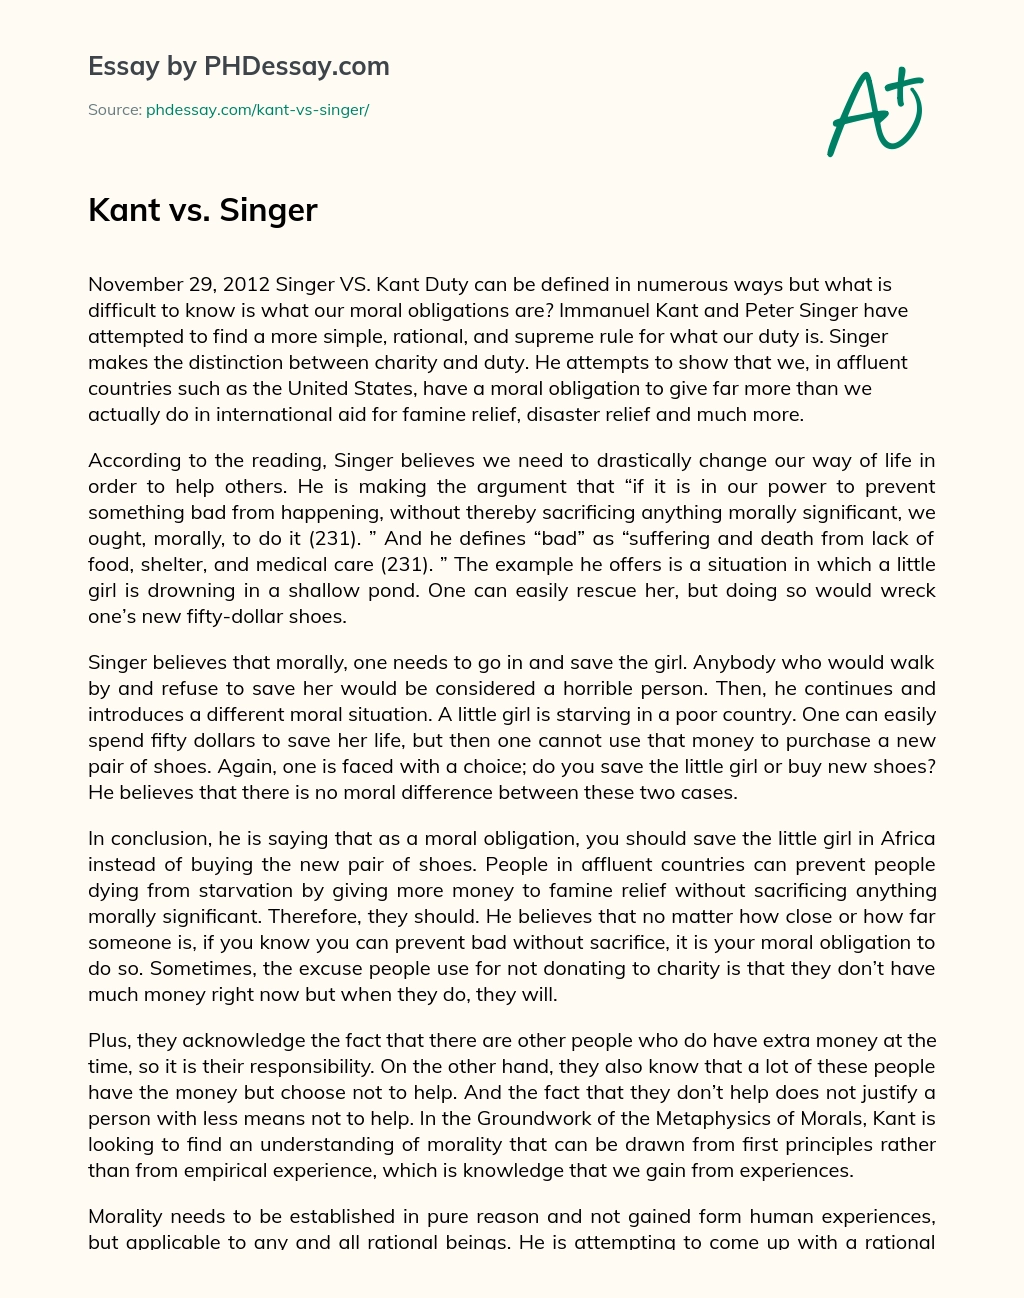 Kant vs. Singer essay